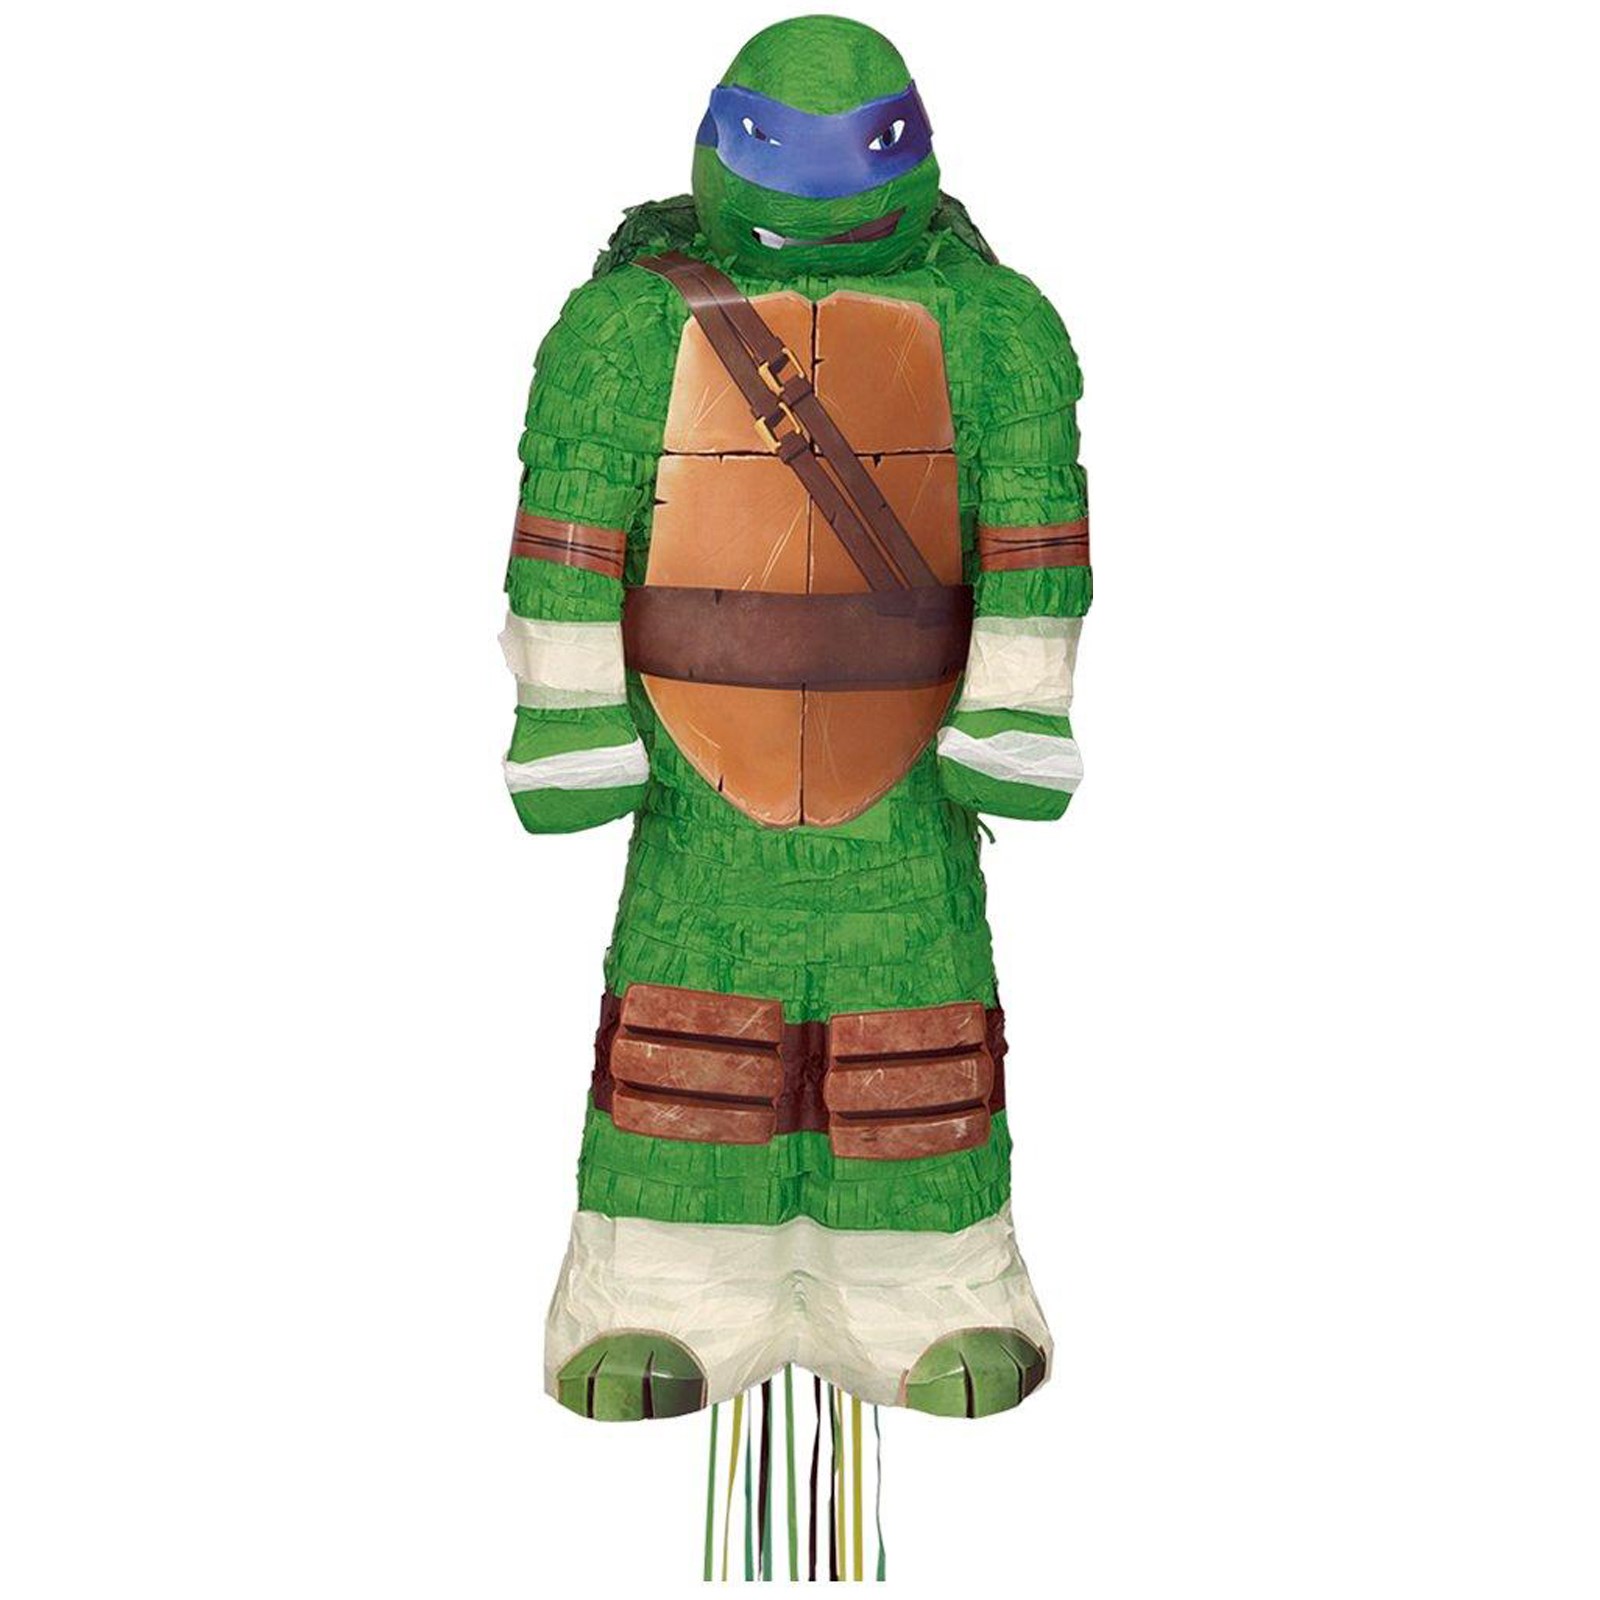 Nickelodeon Teenage Mutant Ninja Turtles Assorted Pull-String Pinata: Ninja Turtle Party Games For Preschoolers 